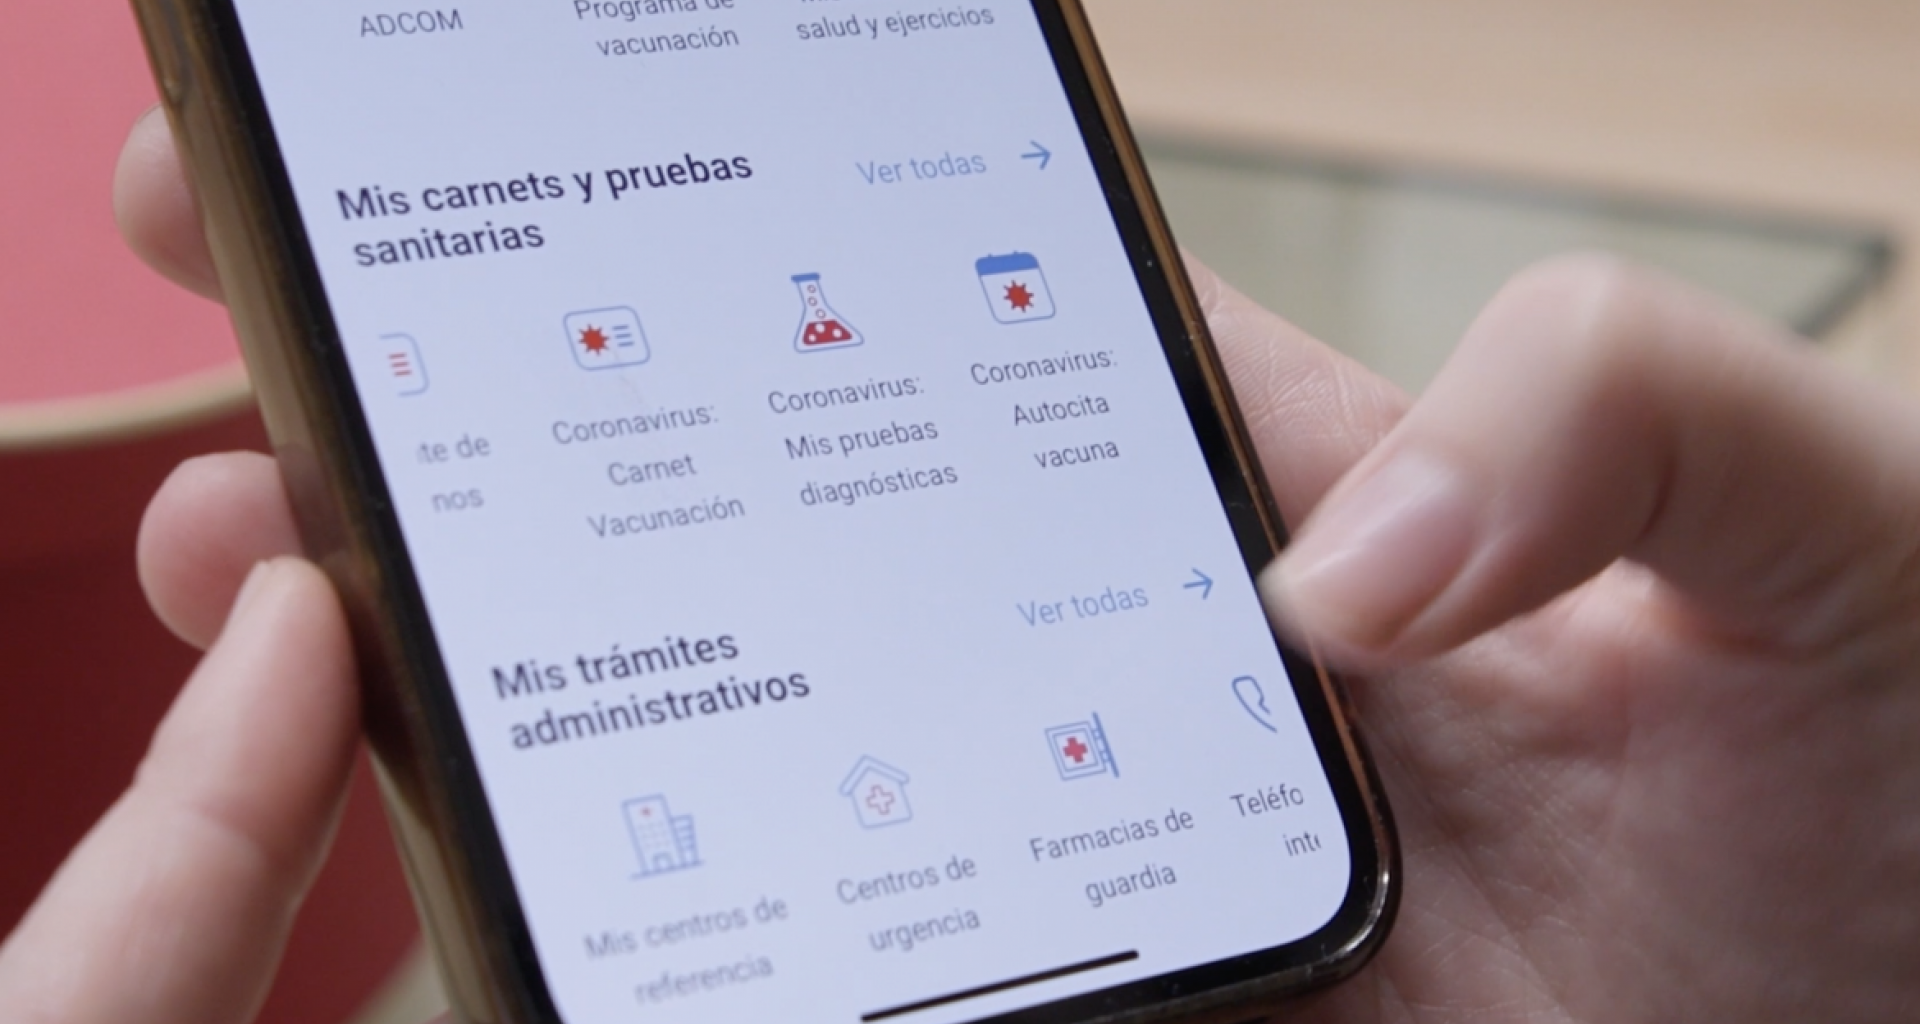 Ya se pueden tramitar las citas de pacientes asociados a la cuenta desde la app Tarjeta Sanitaria Virtual